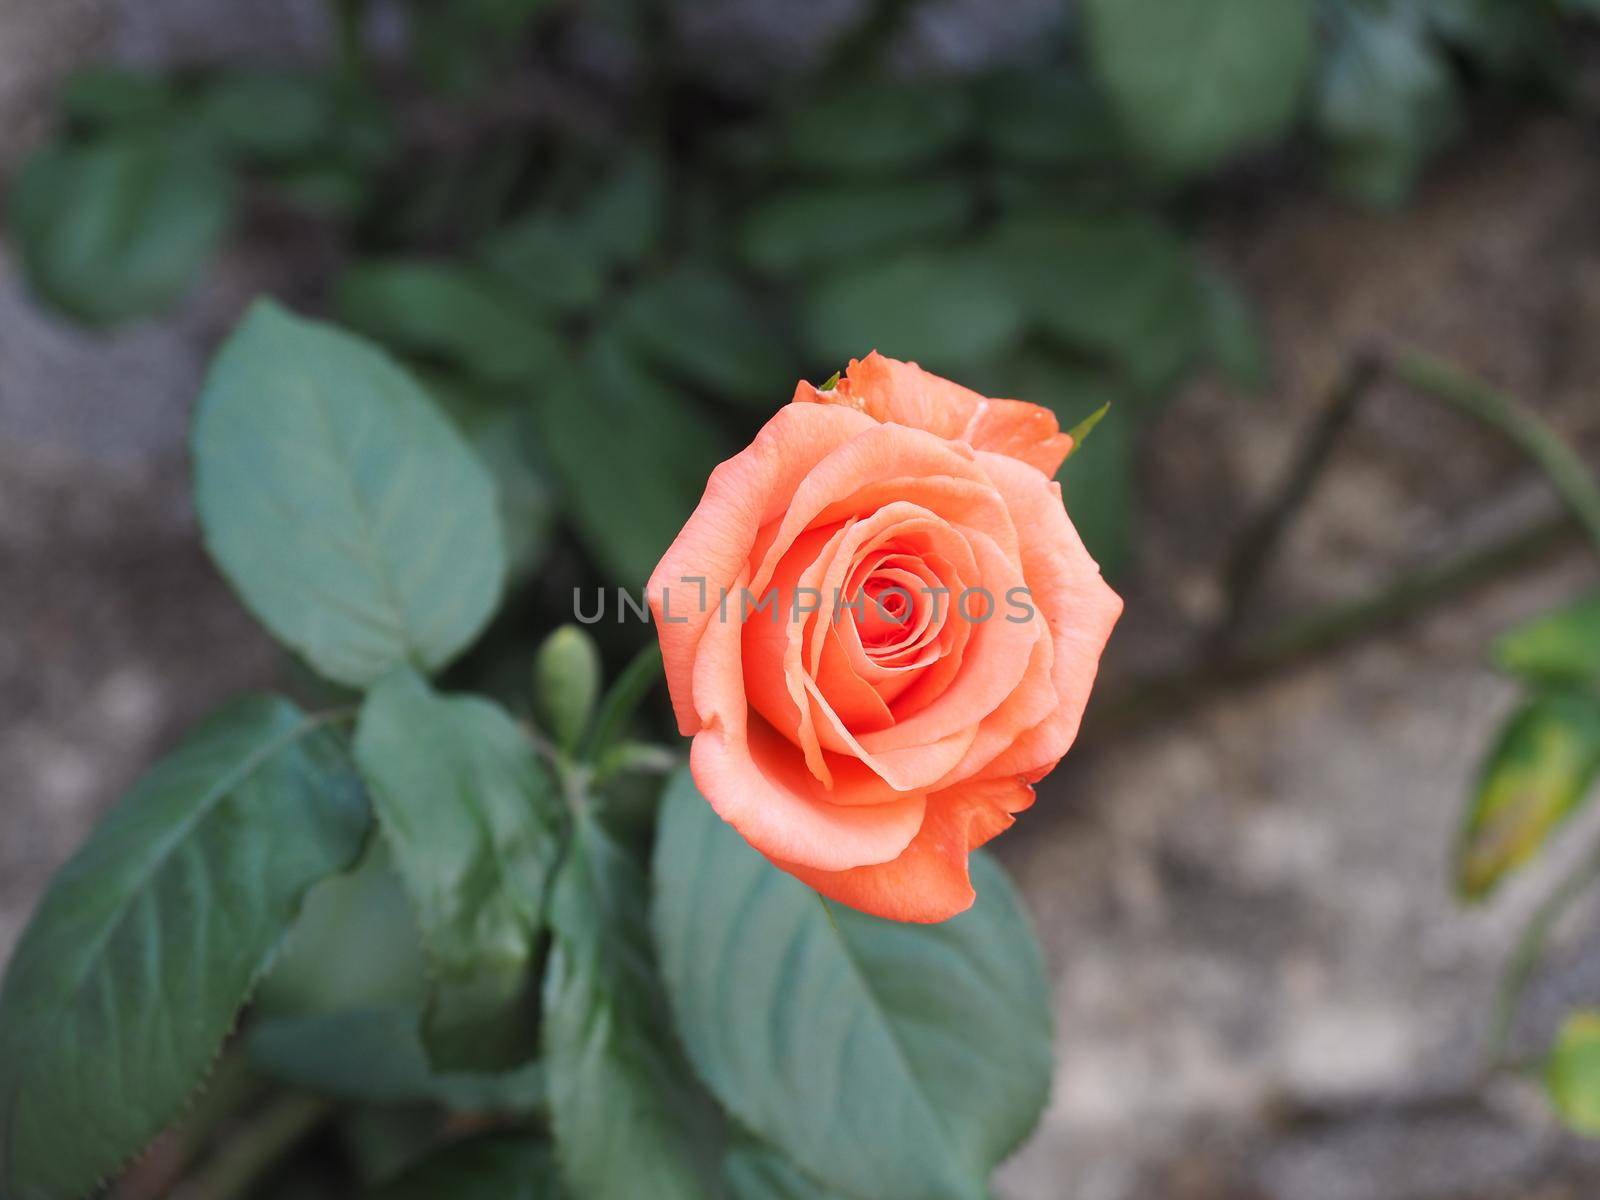 rose perennial shrub orange flower scientific name Rosa